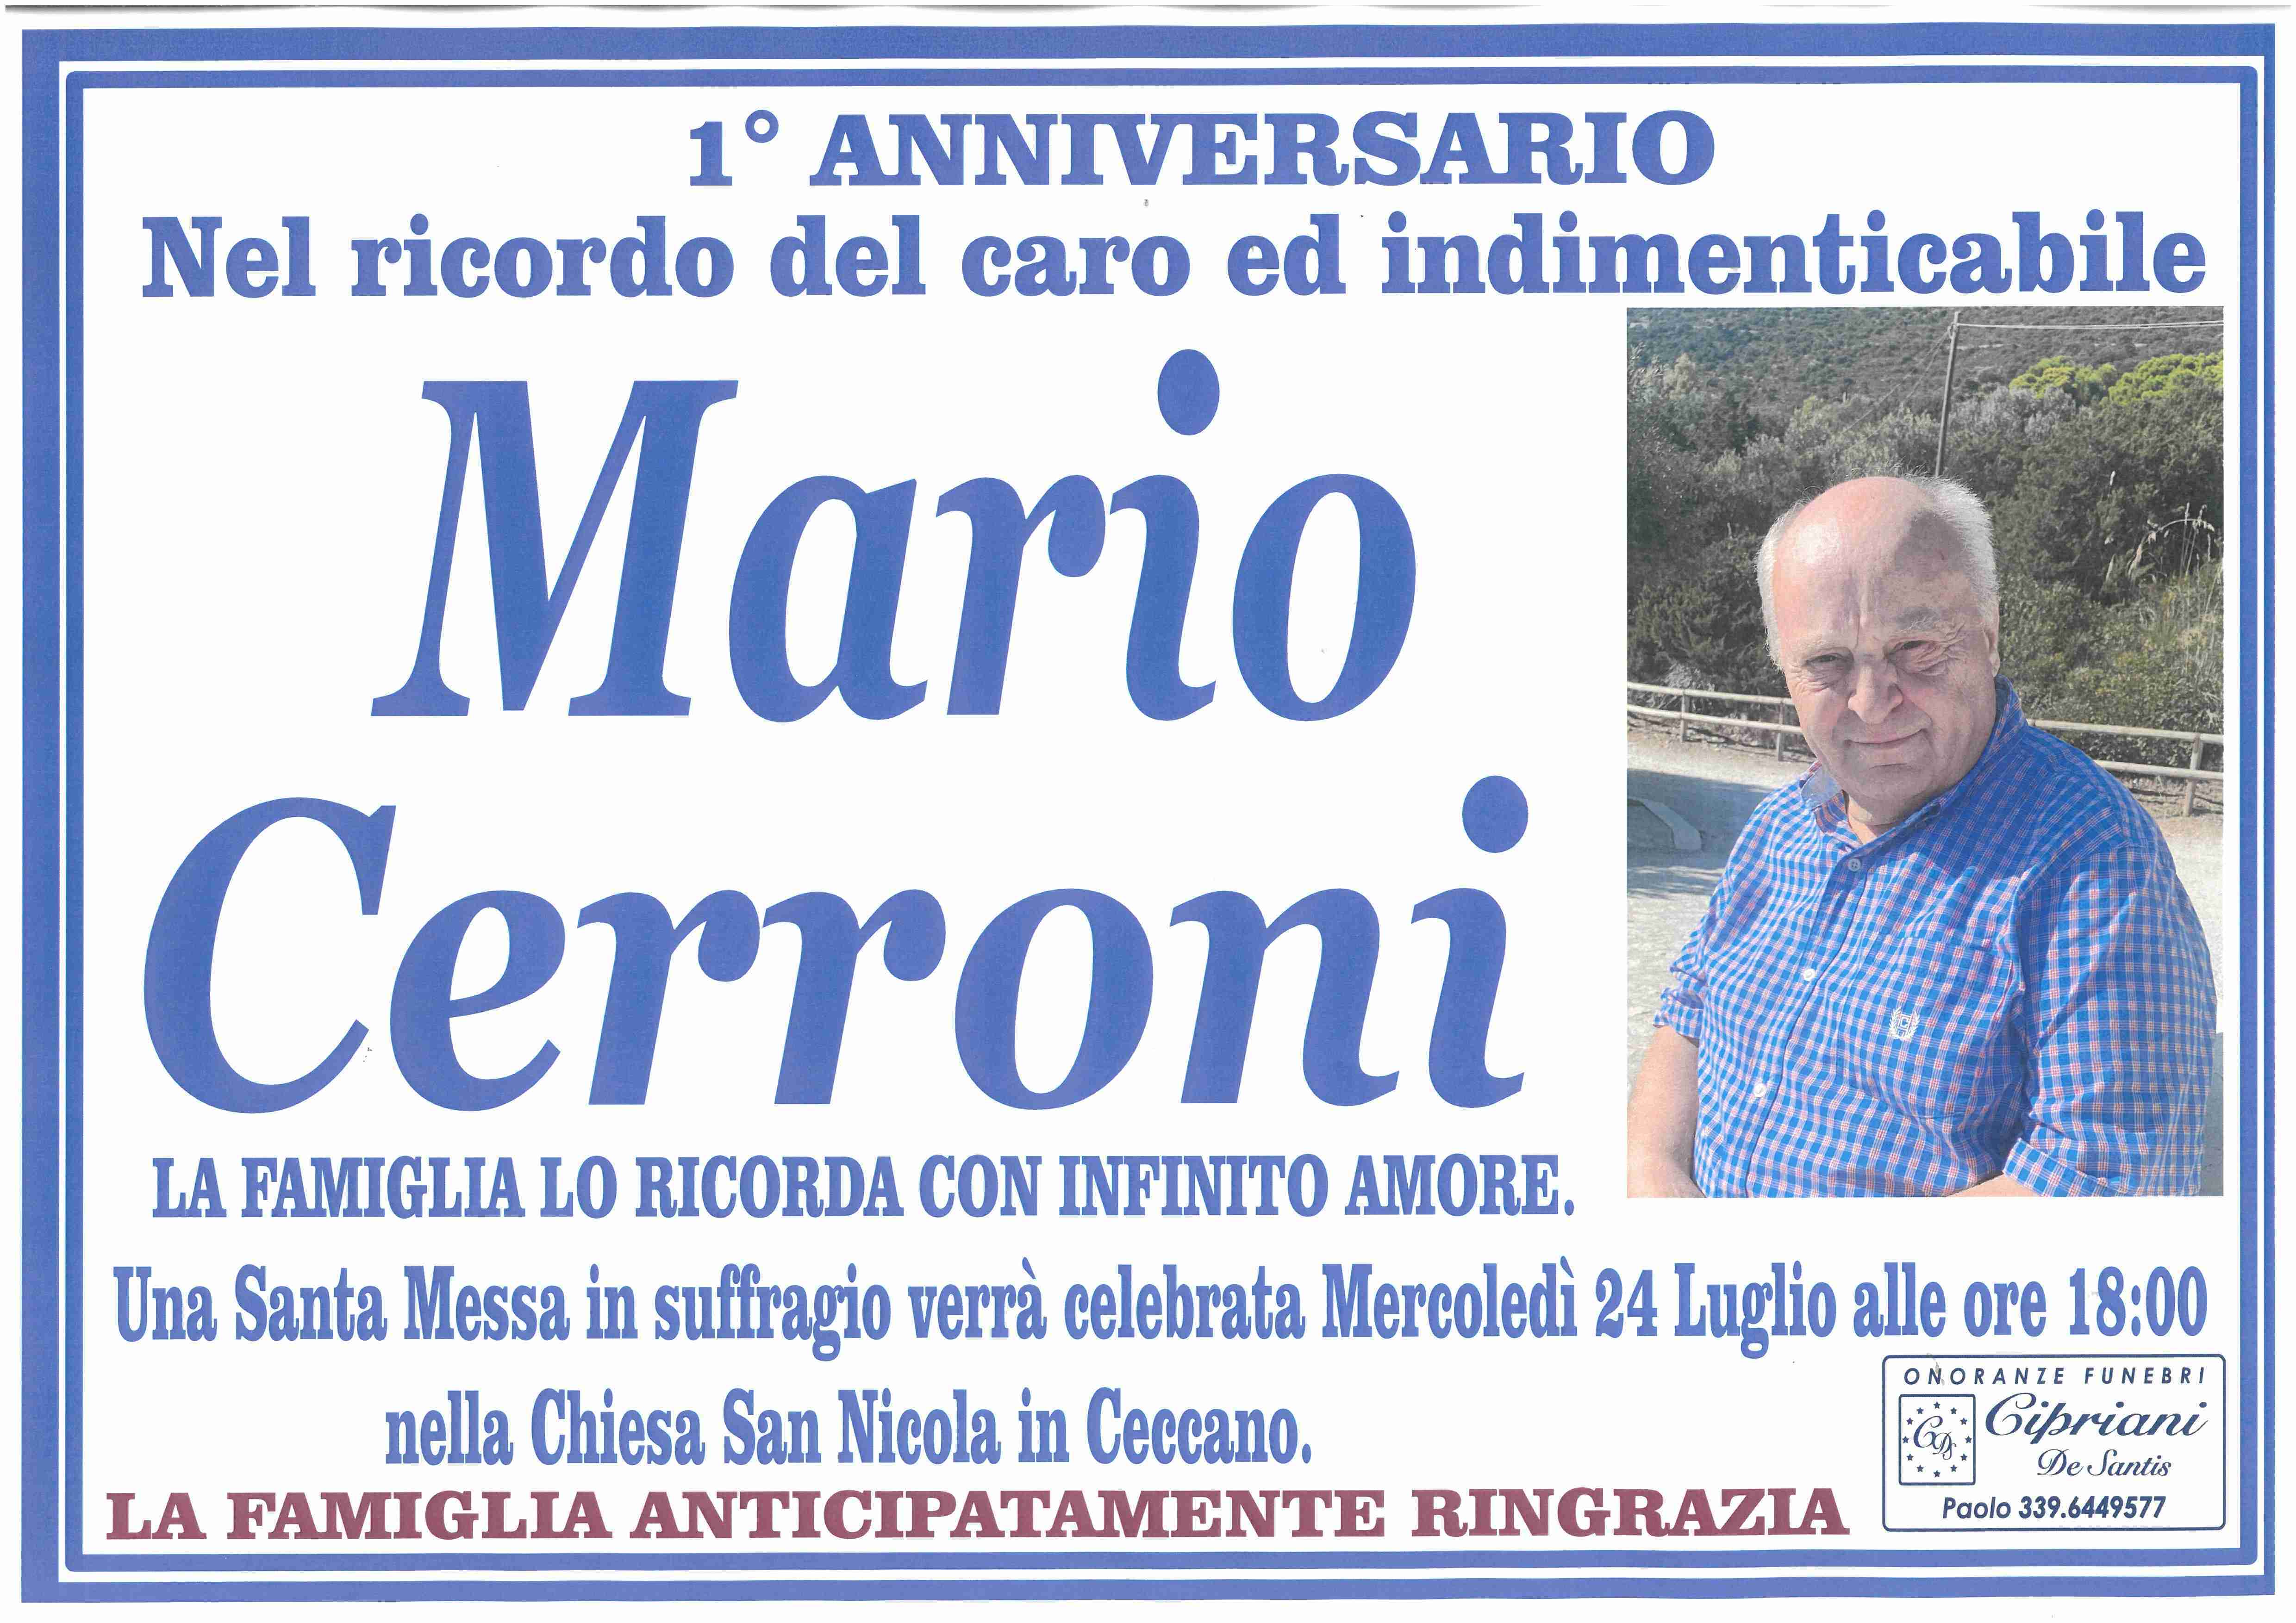 Mario Cerroni